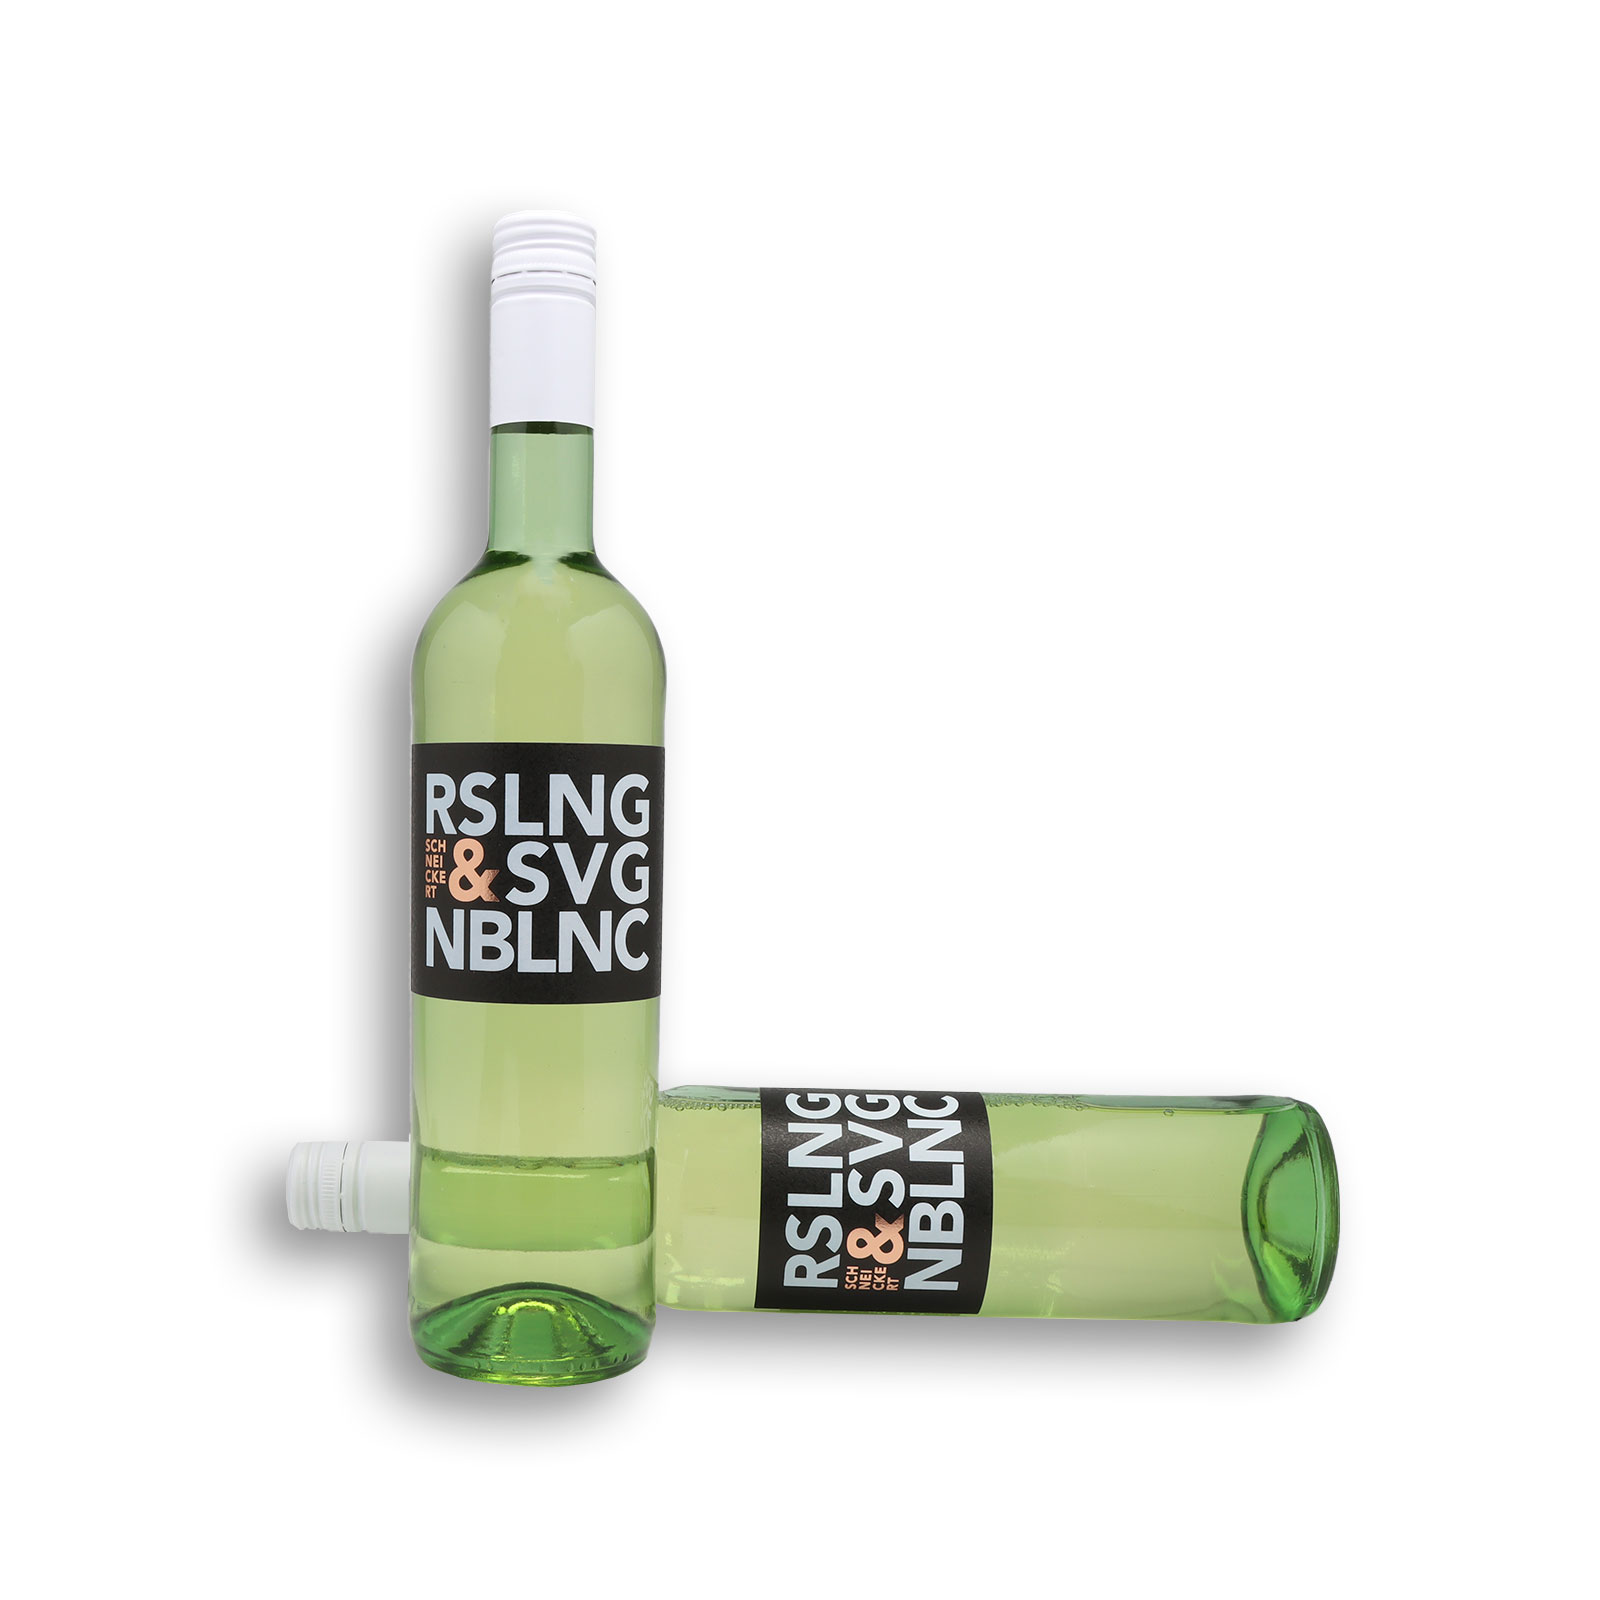 Der Riesling & Sauvignon Blanc eine Kombination aus den Stärken beider Weine.